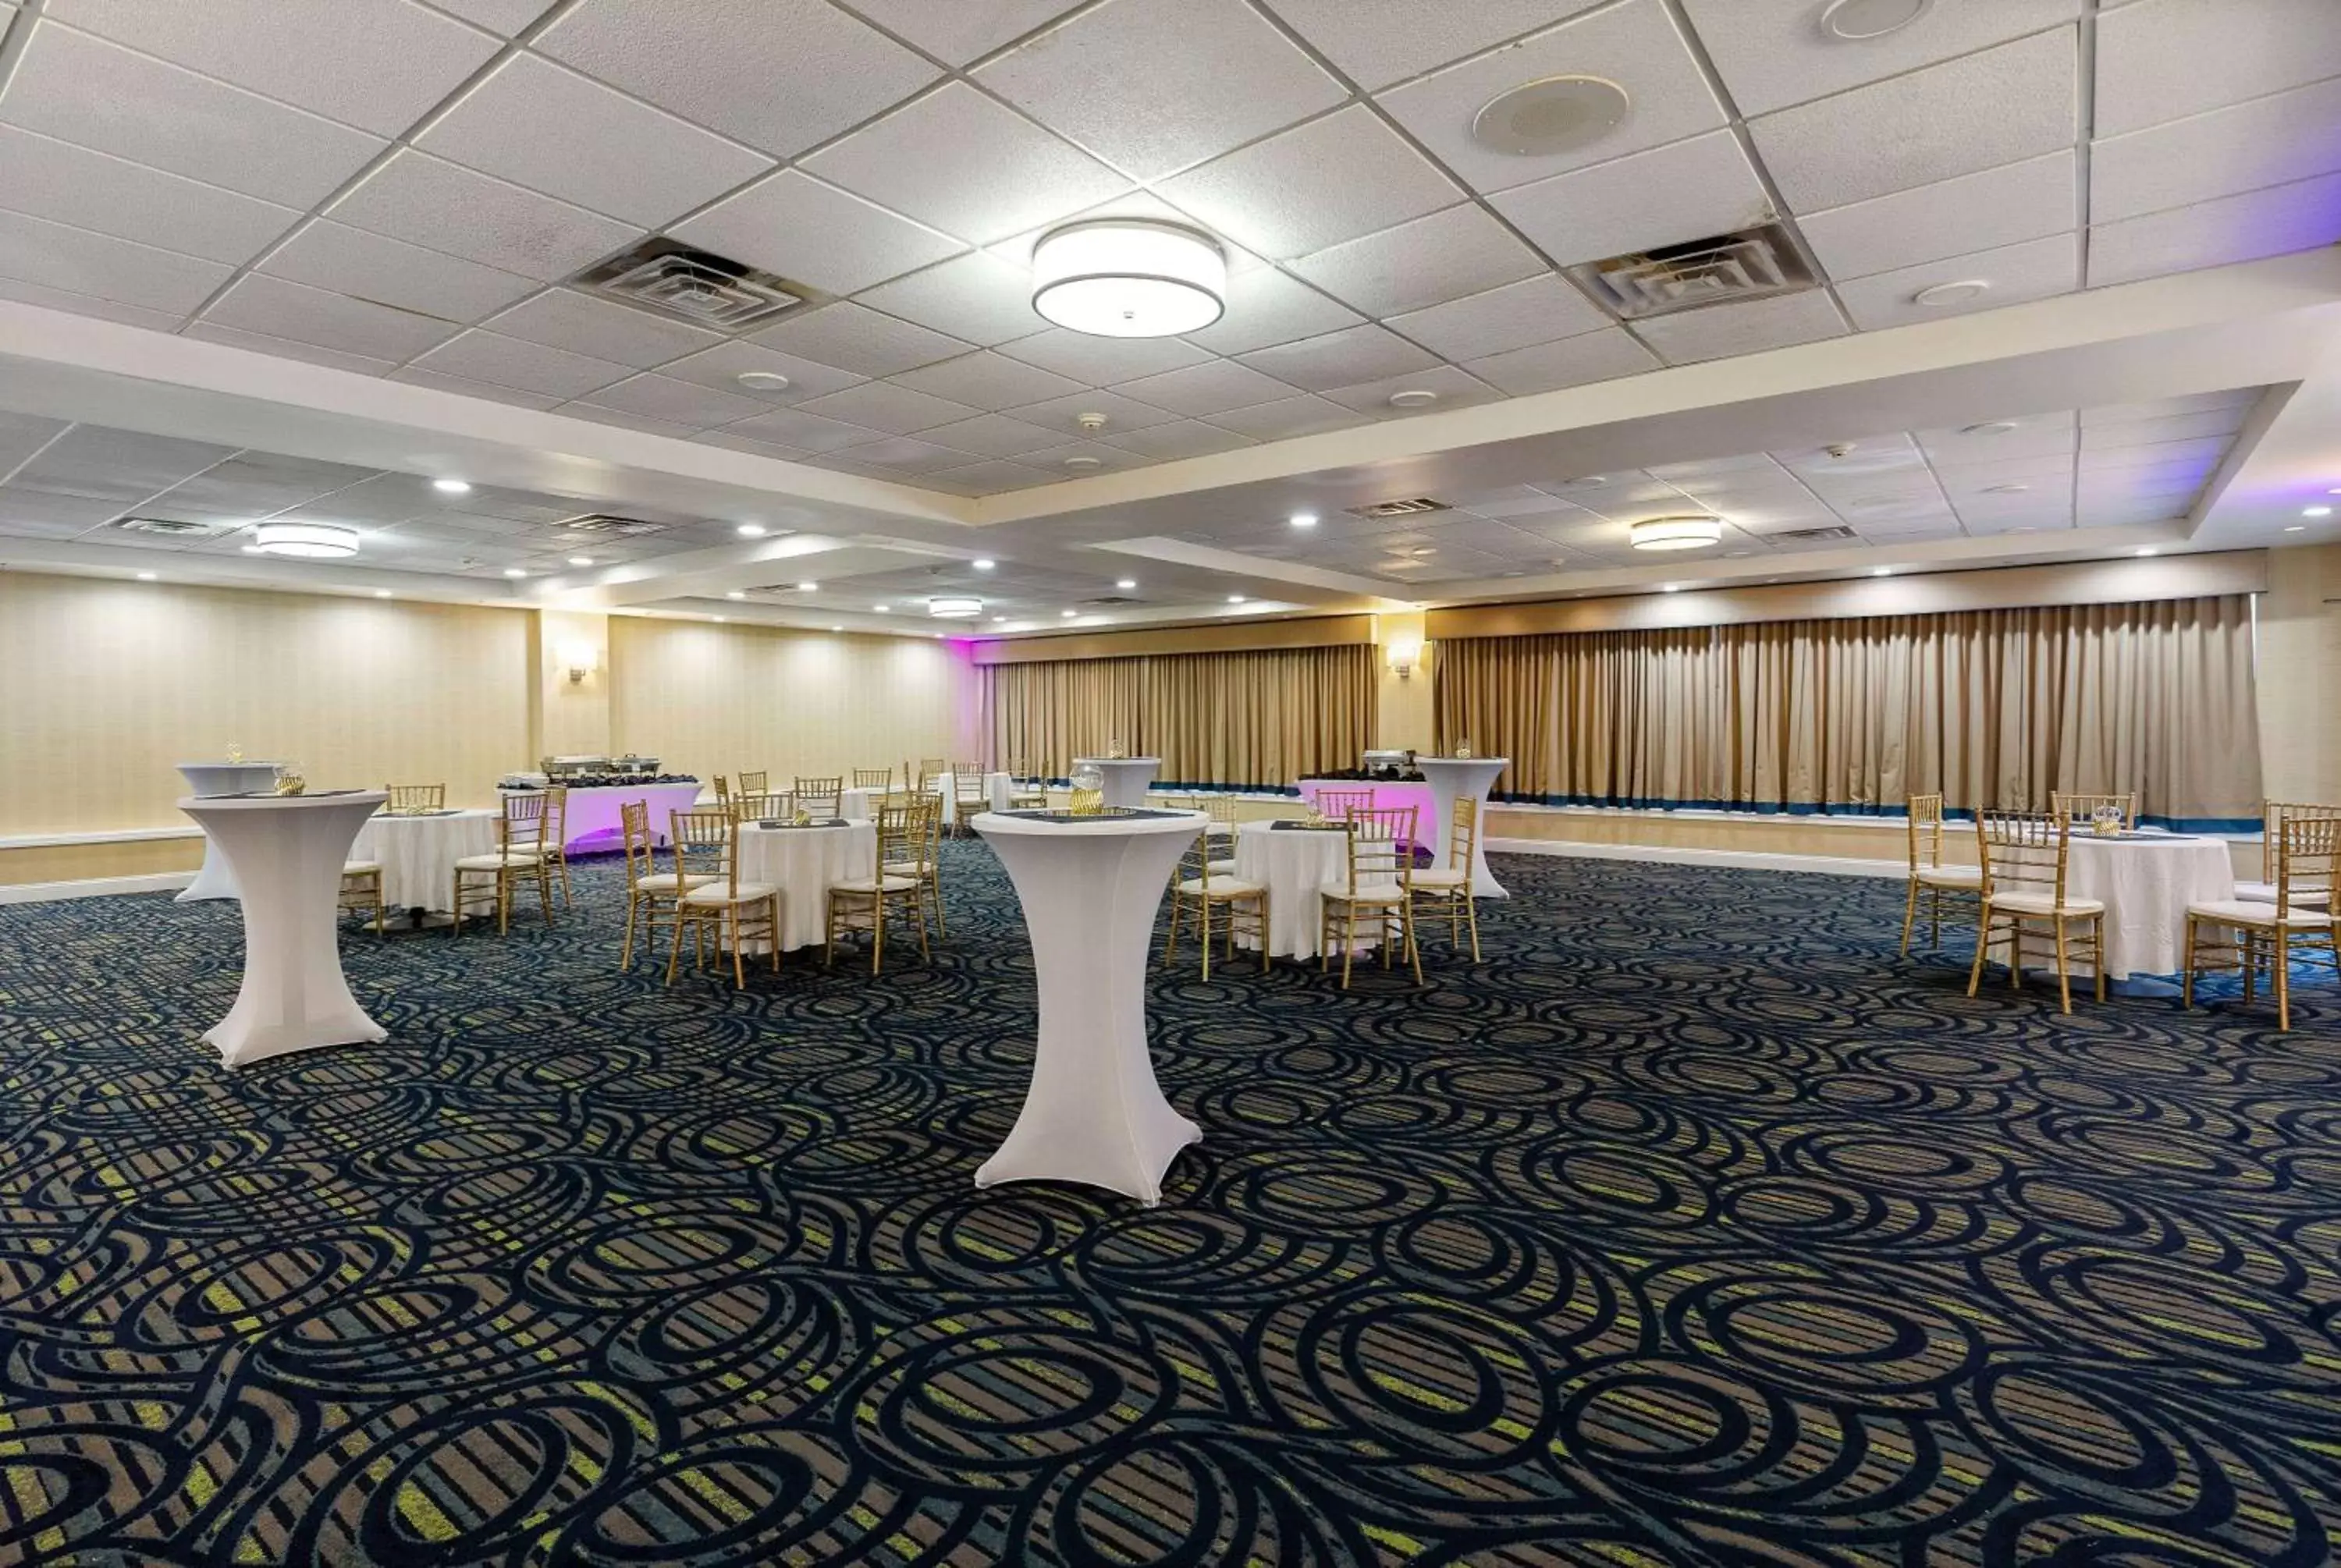 Banquet/Function facilities, Banquet Facilities in Wyndham Garden Manassas